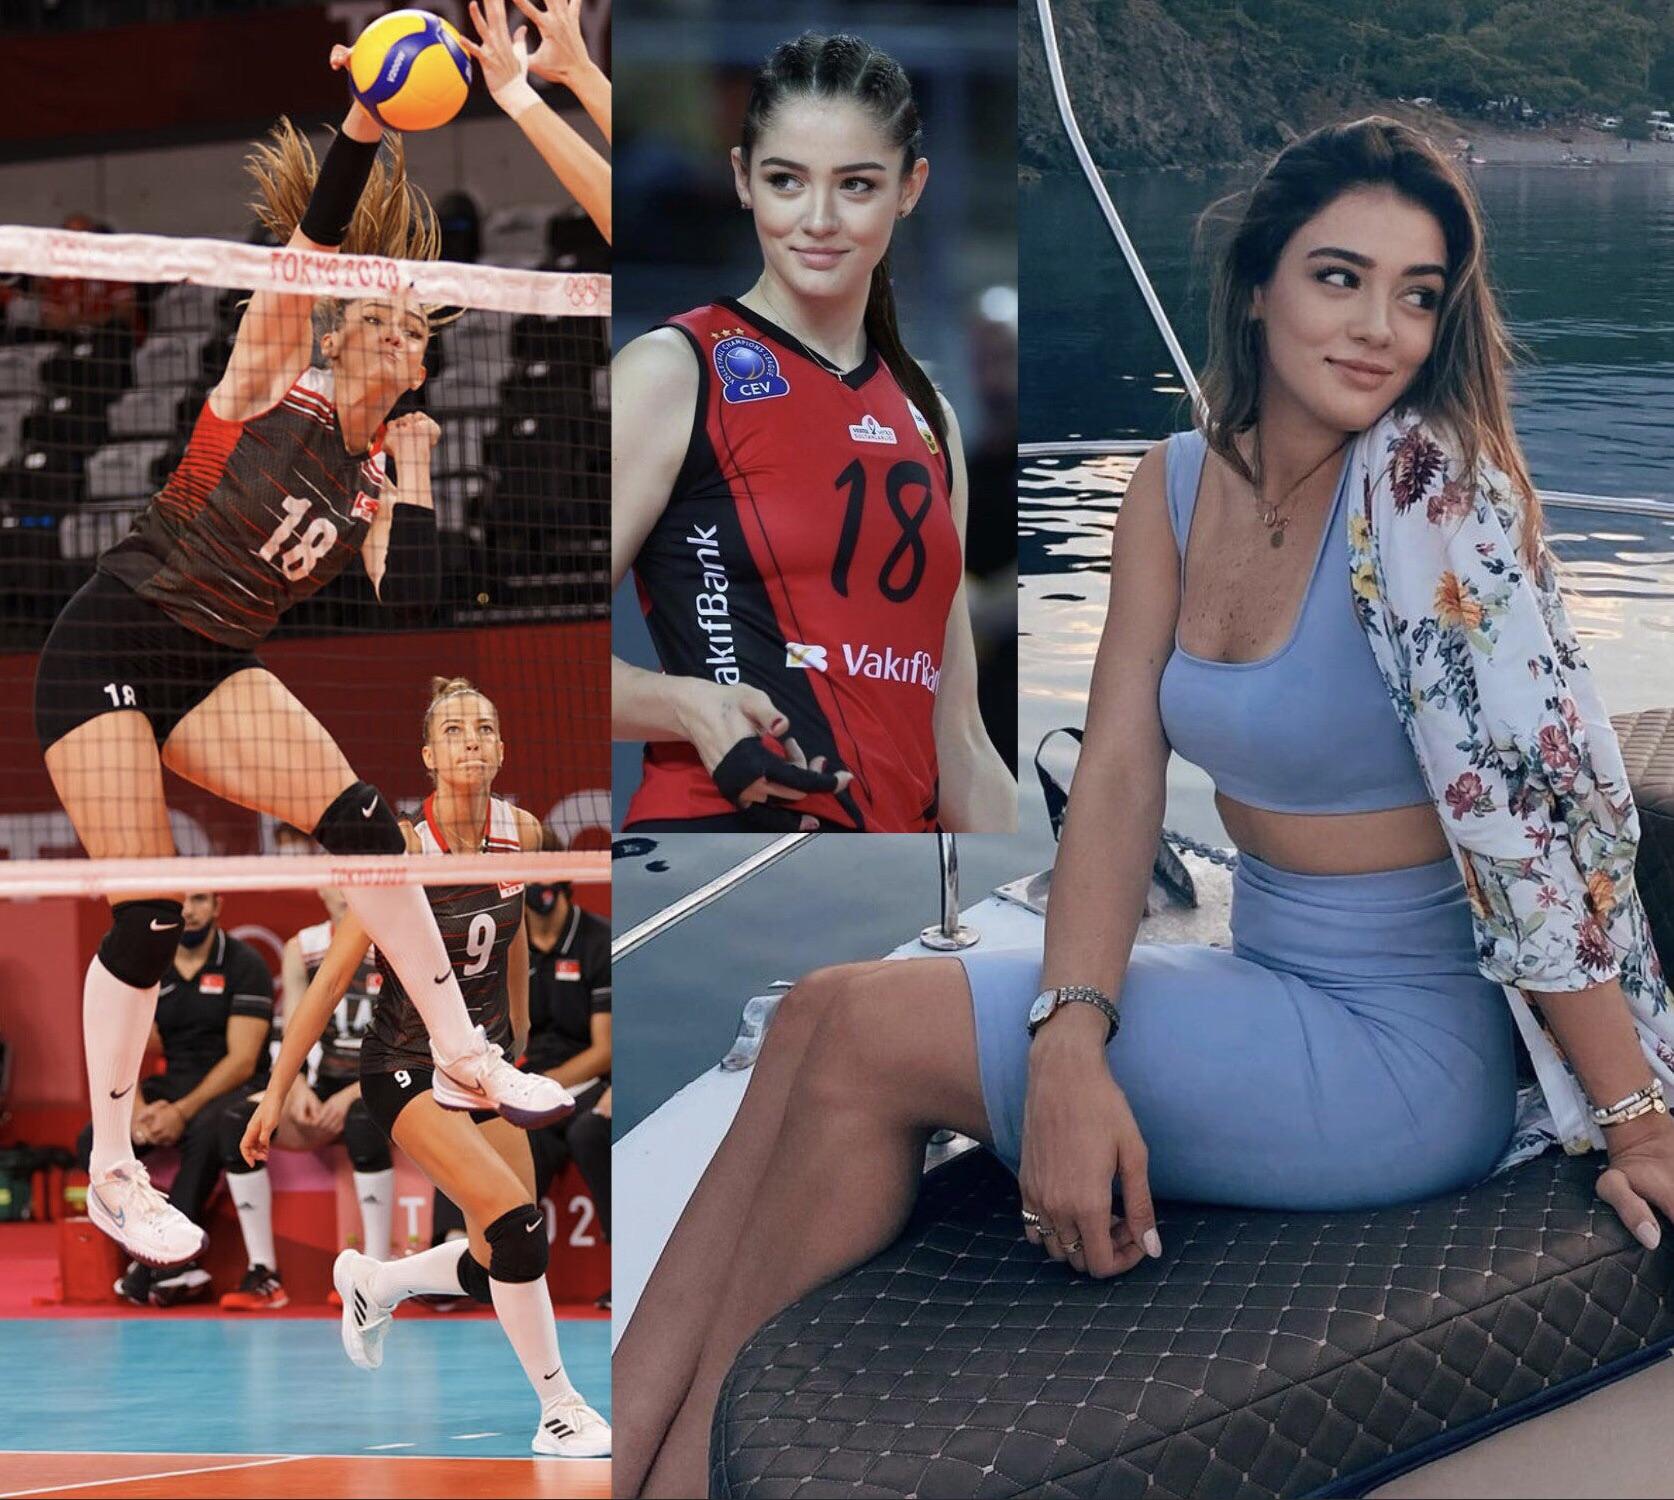 La volleyeuse turque Zehra Gunes mesure 1m80 photo